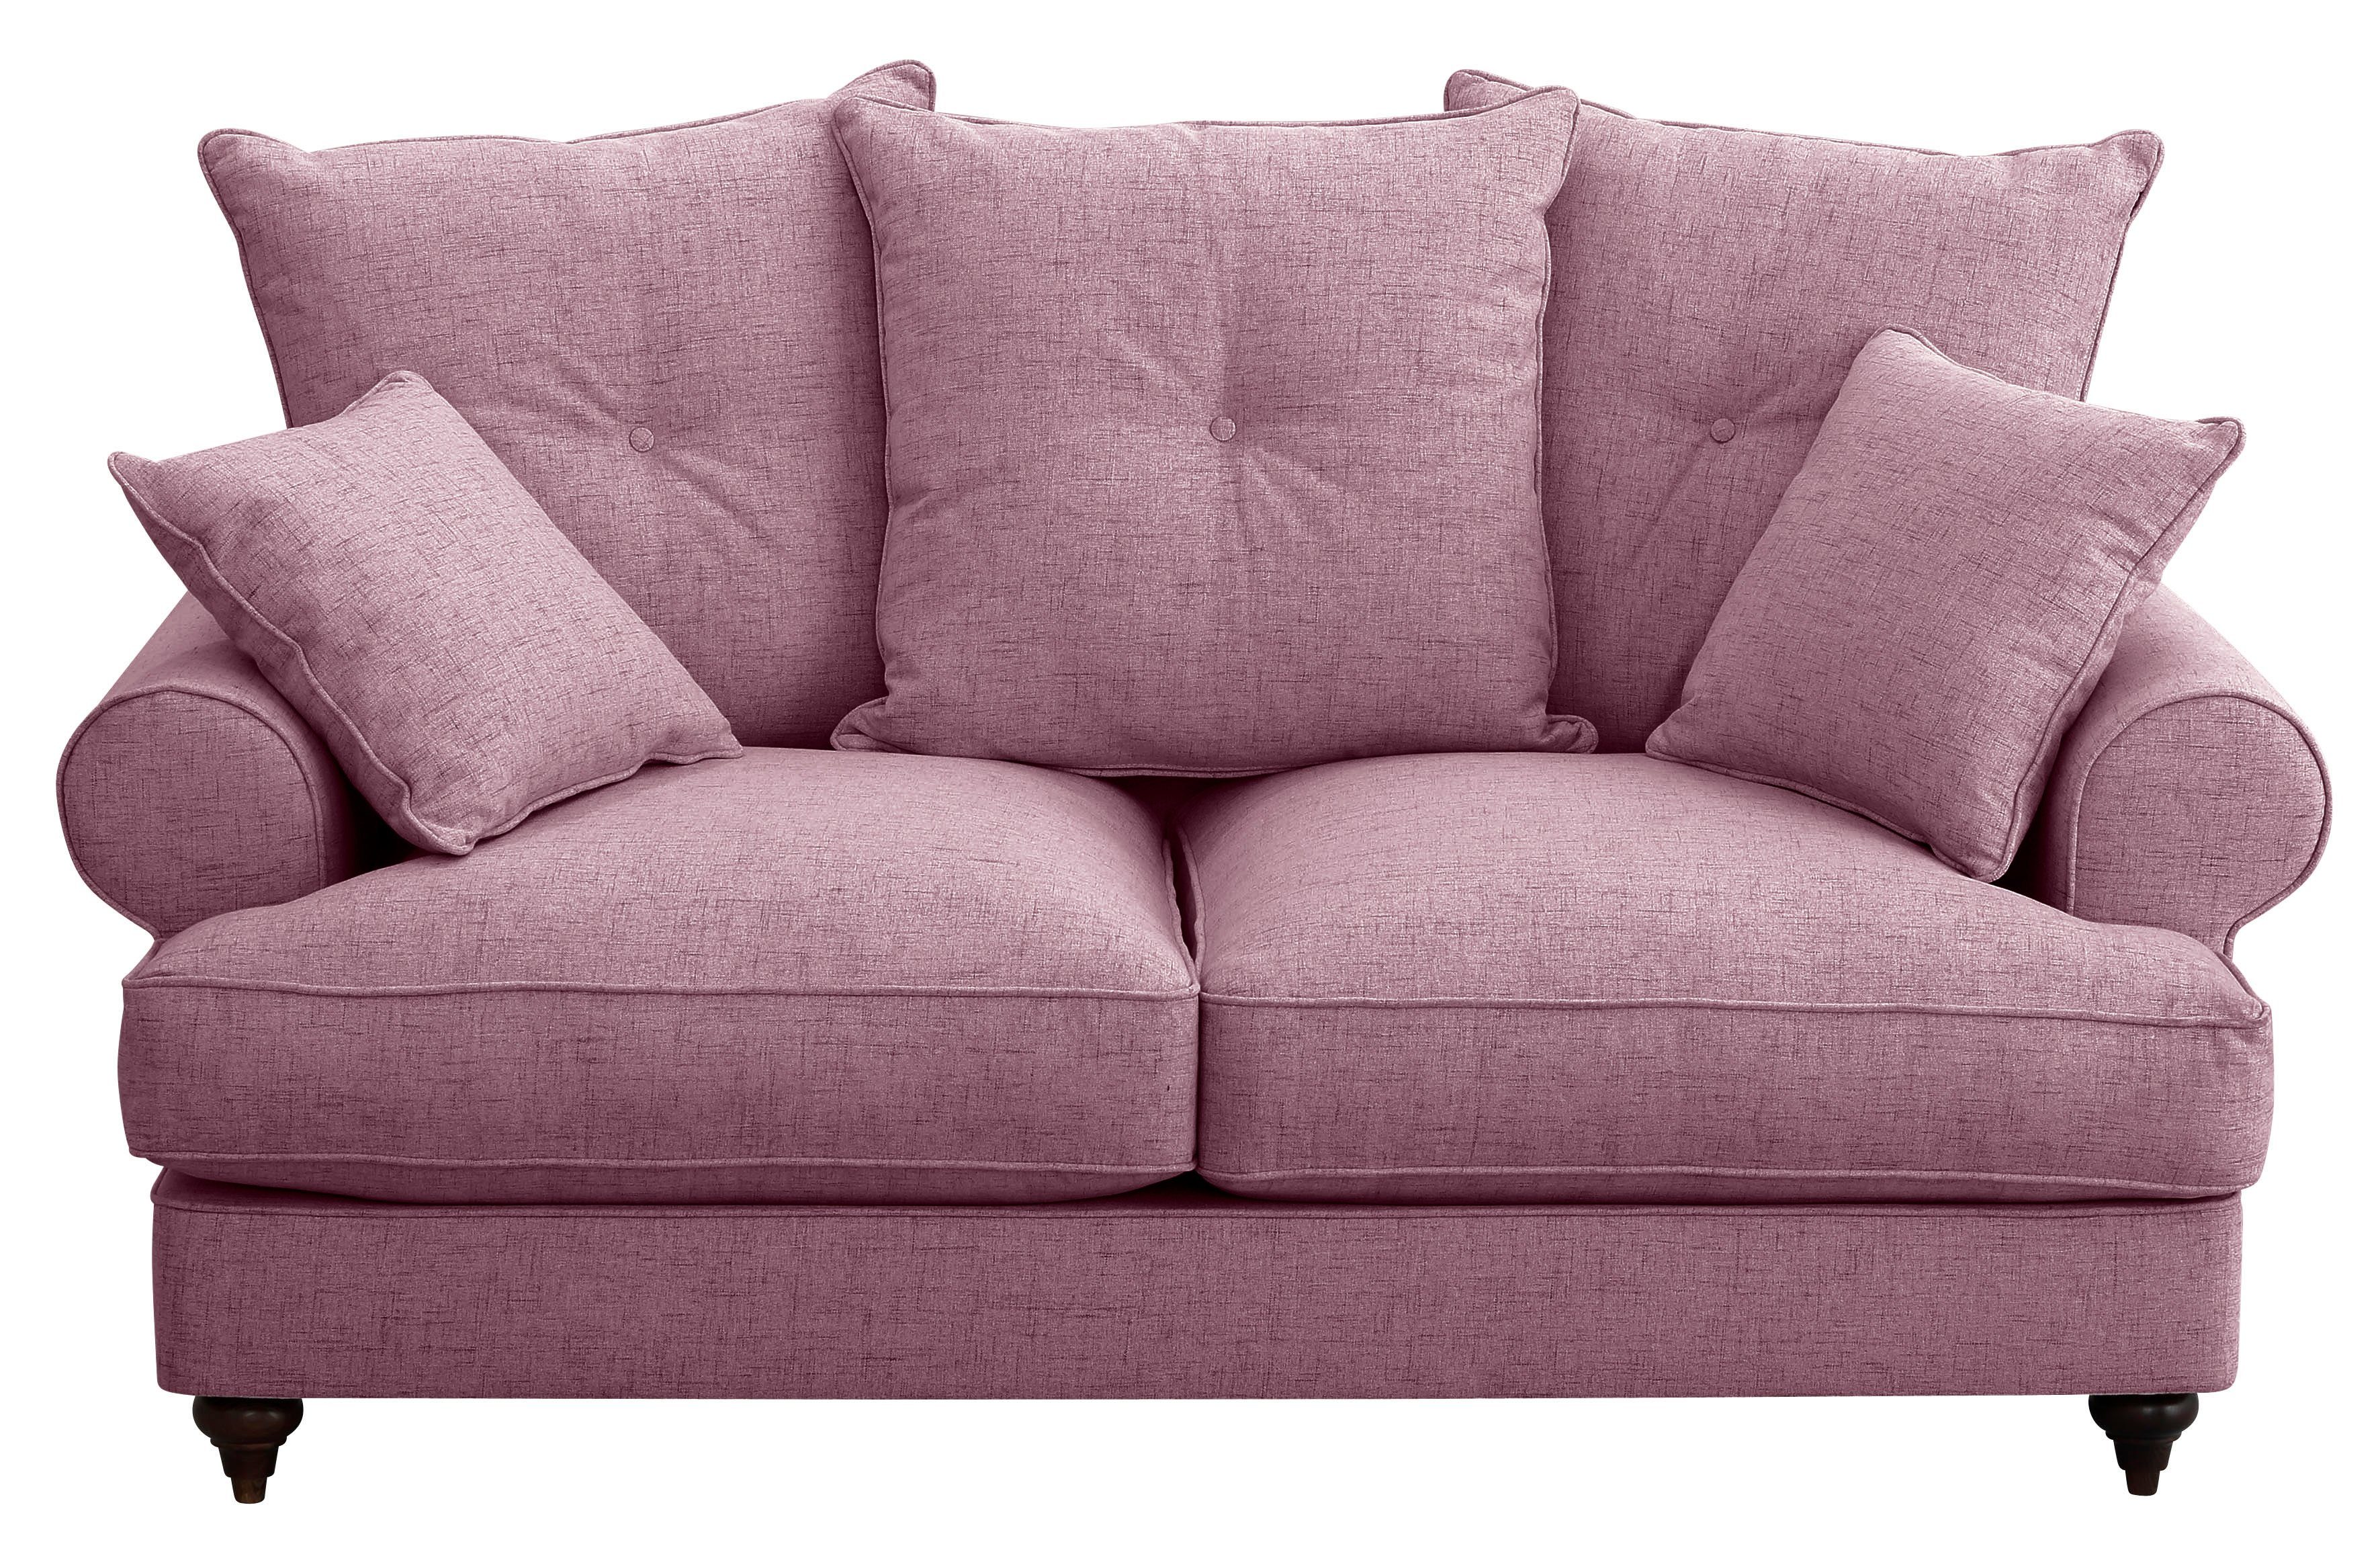 in 2-Sitzer mit erhältlich Home Bloomer, Farben verschiedenen affaire Kaltschaum, violet hochwertigem